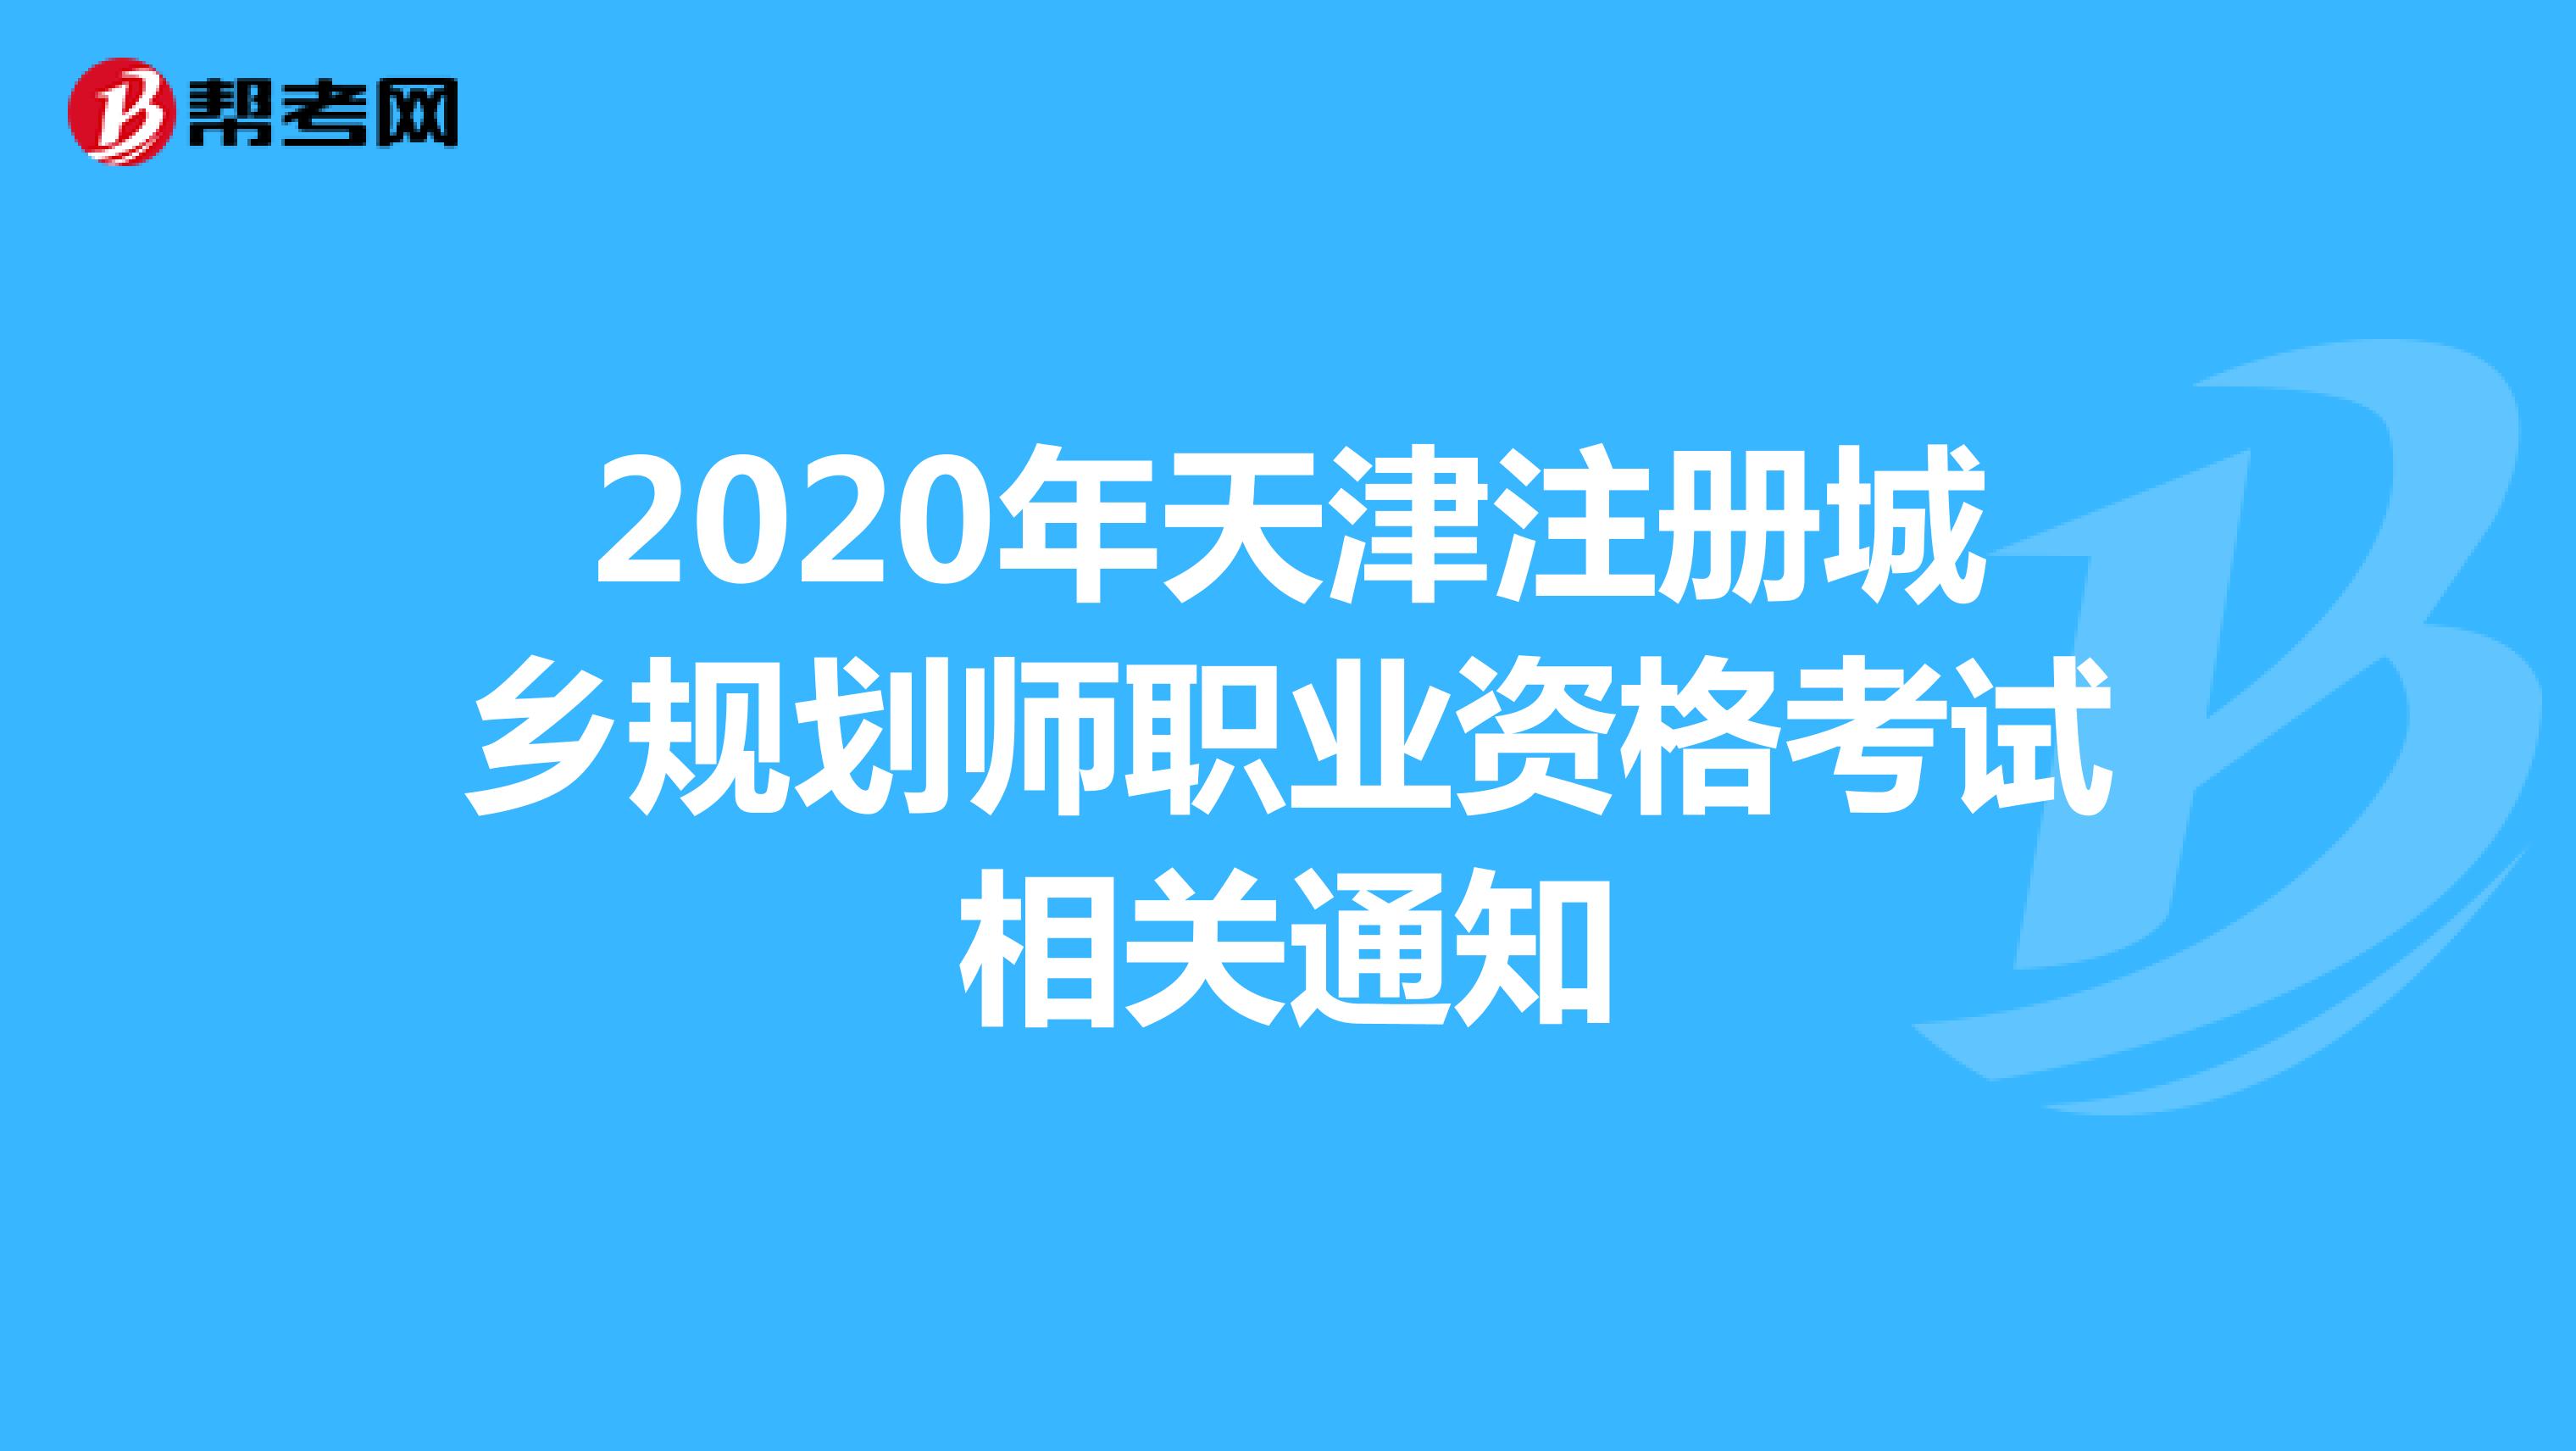 2020年天津注册城乡规划师职业资格考试相关通知